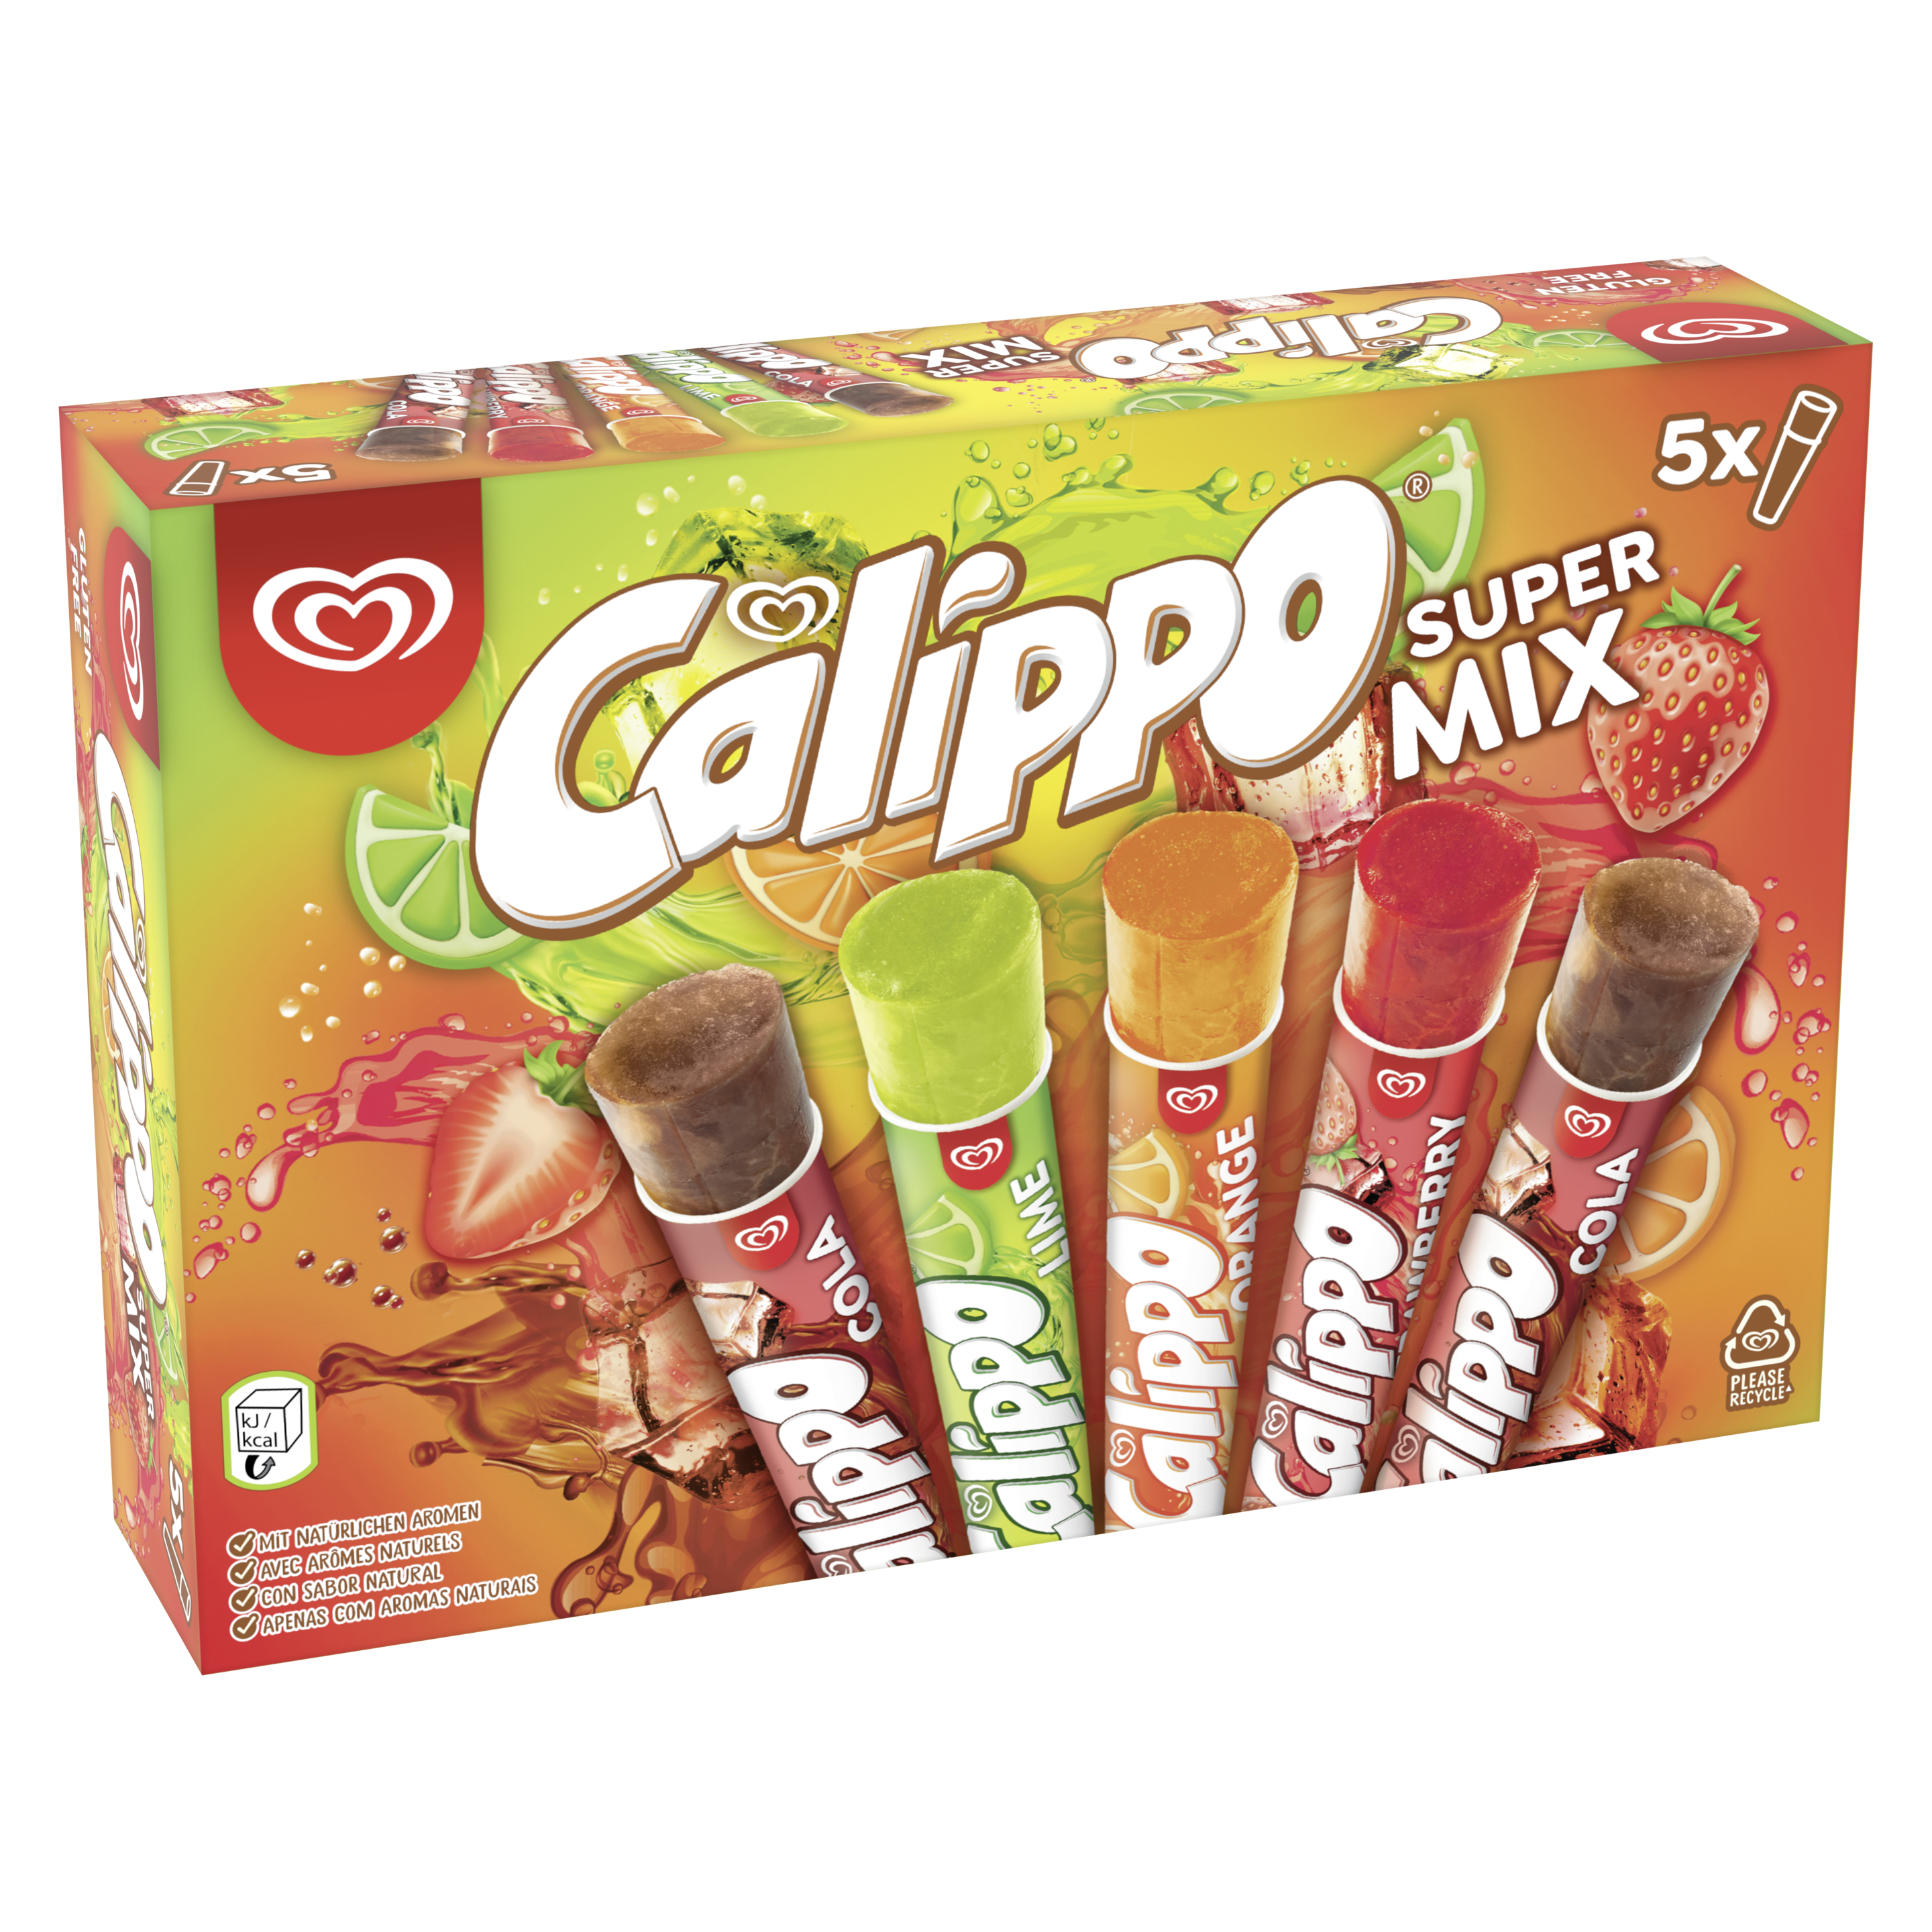 Calippo Super Mix